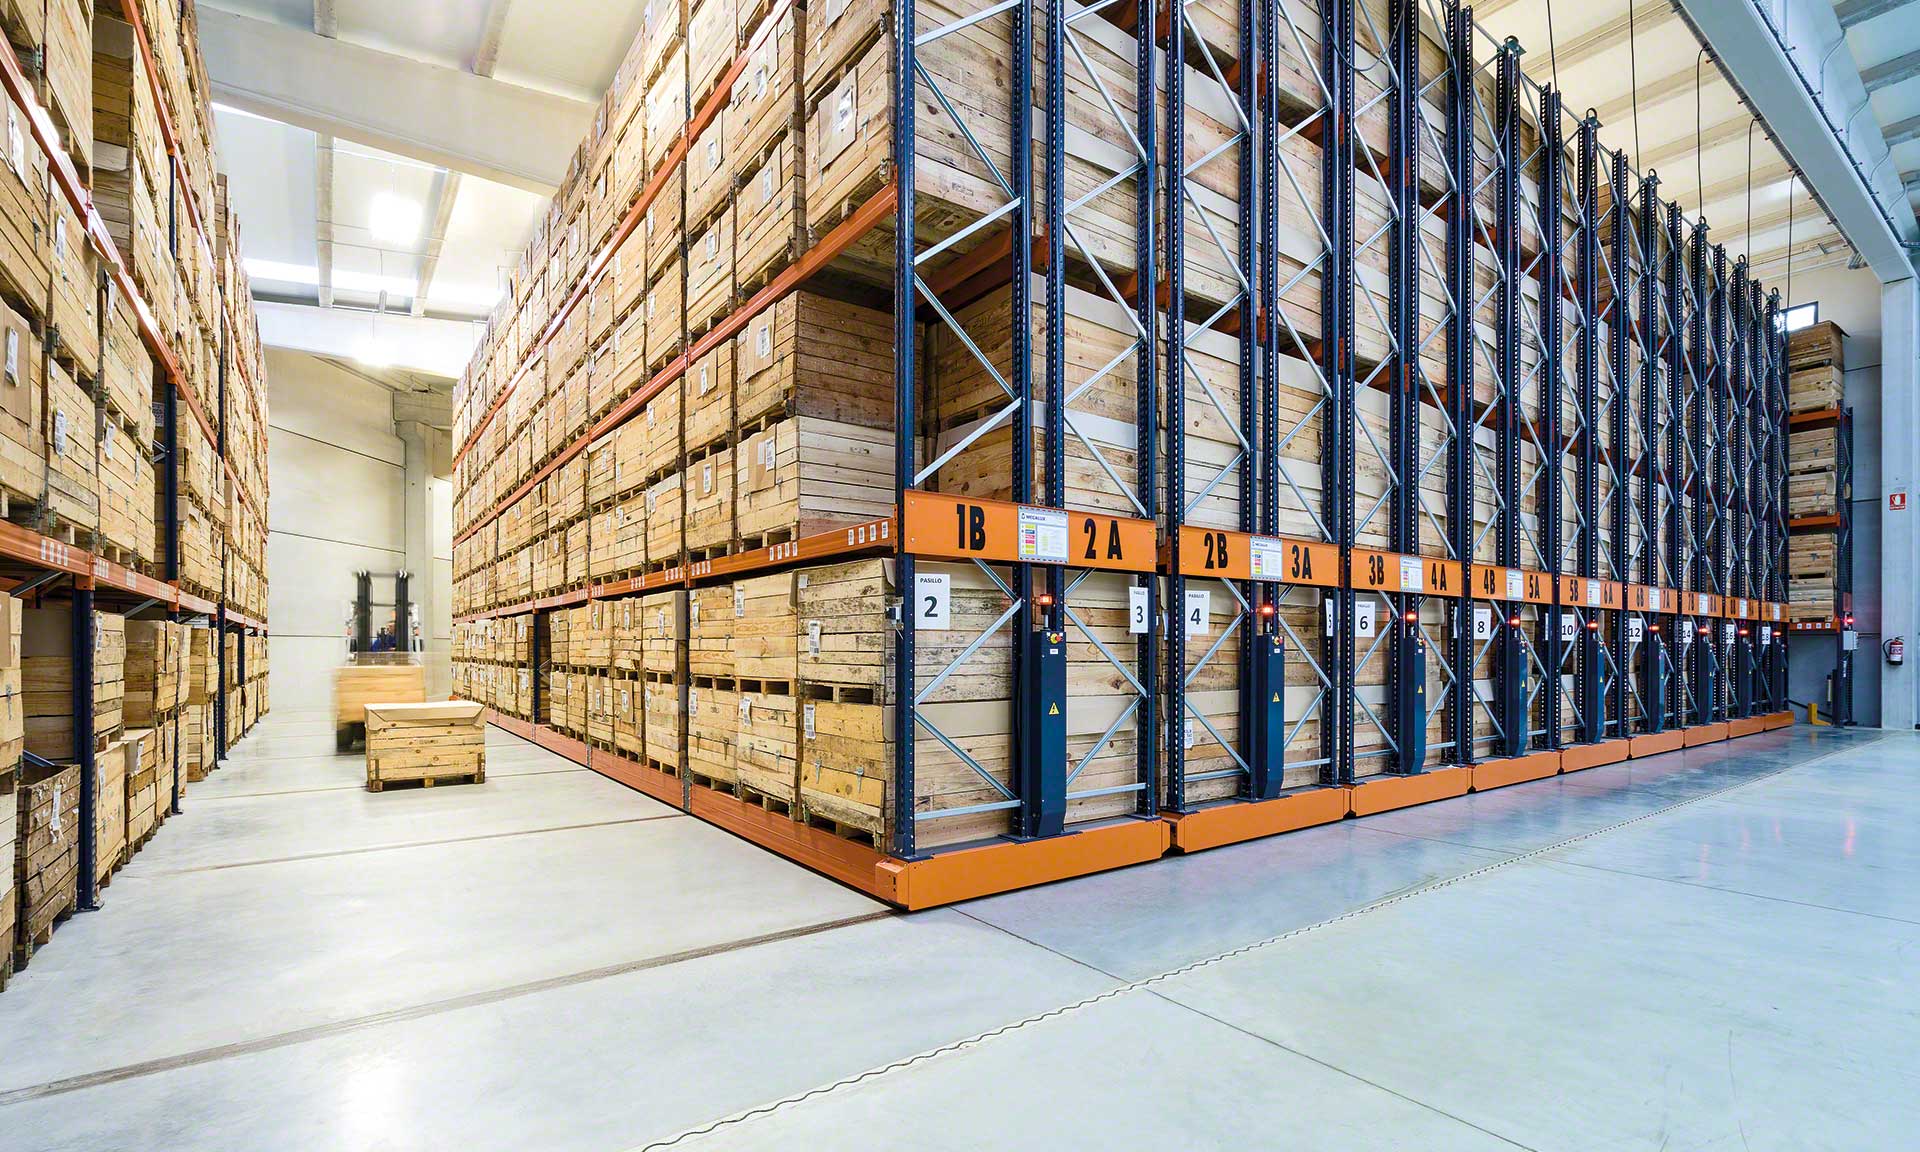 高密度存储可以扩大存储容量，释放仓库空间